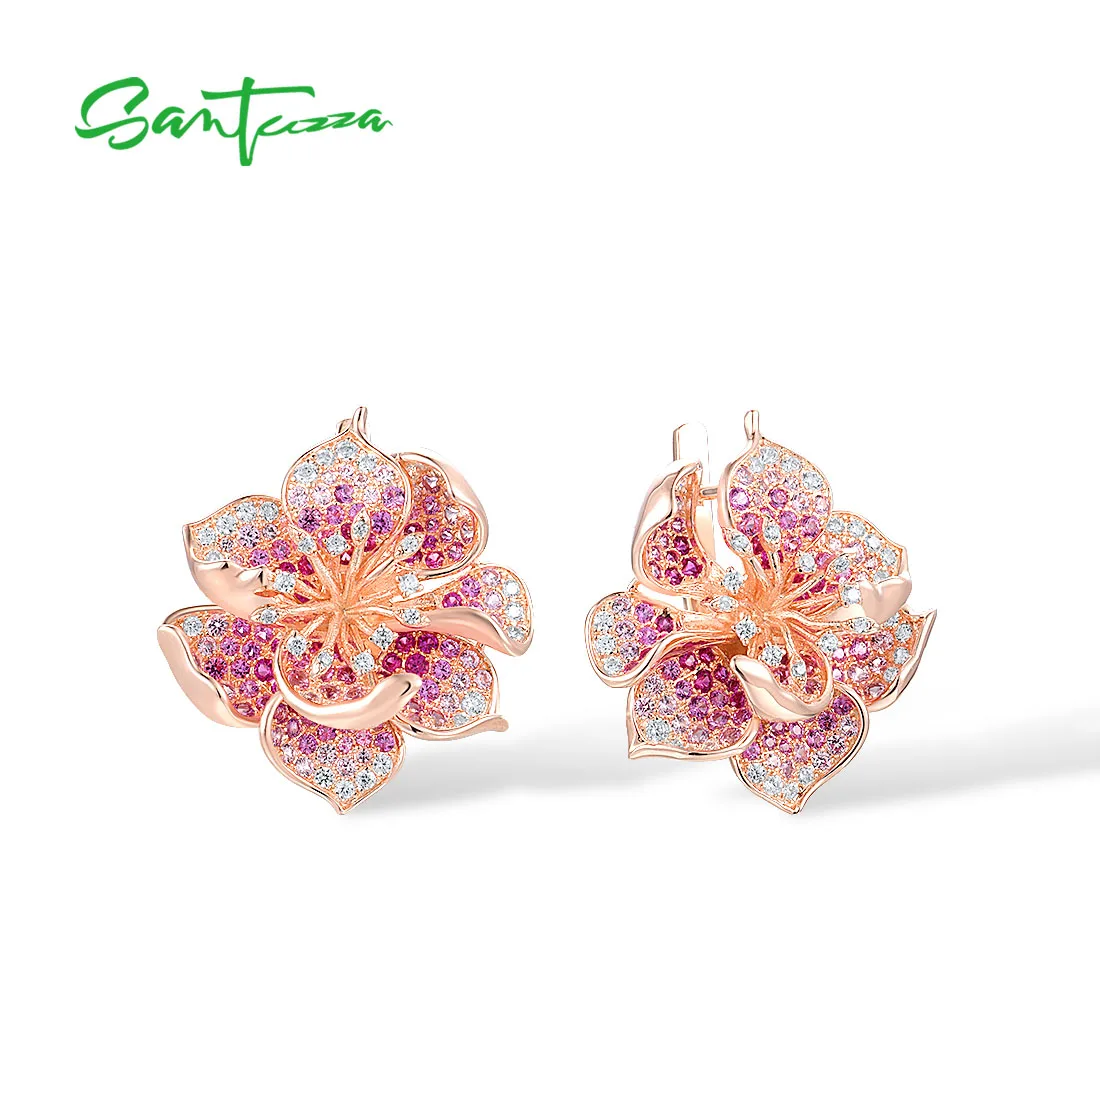 SANTUZZA 925 Sterling Silver Earrings For Women Lab Created Ruby/Pink Sapphire White CZ Gradient Flower Earrings Fine Jewelry